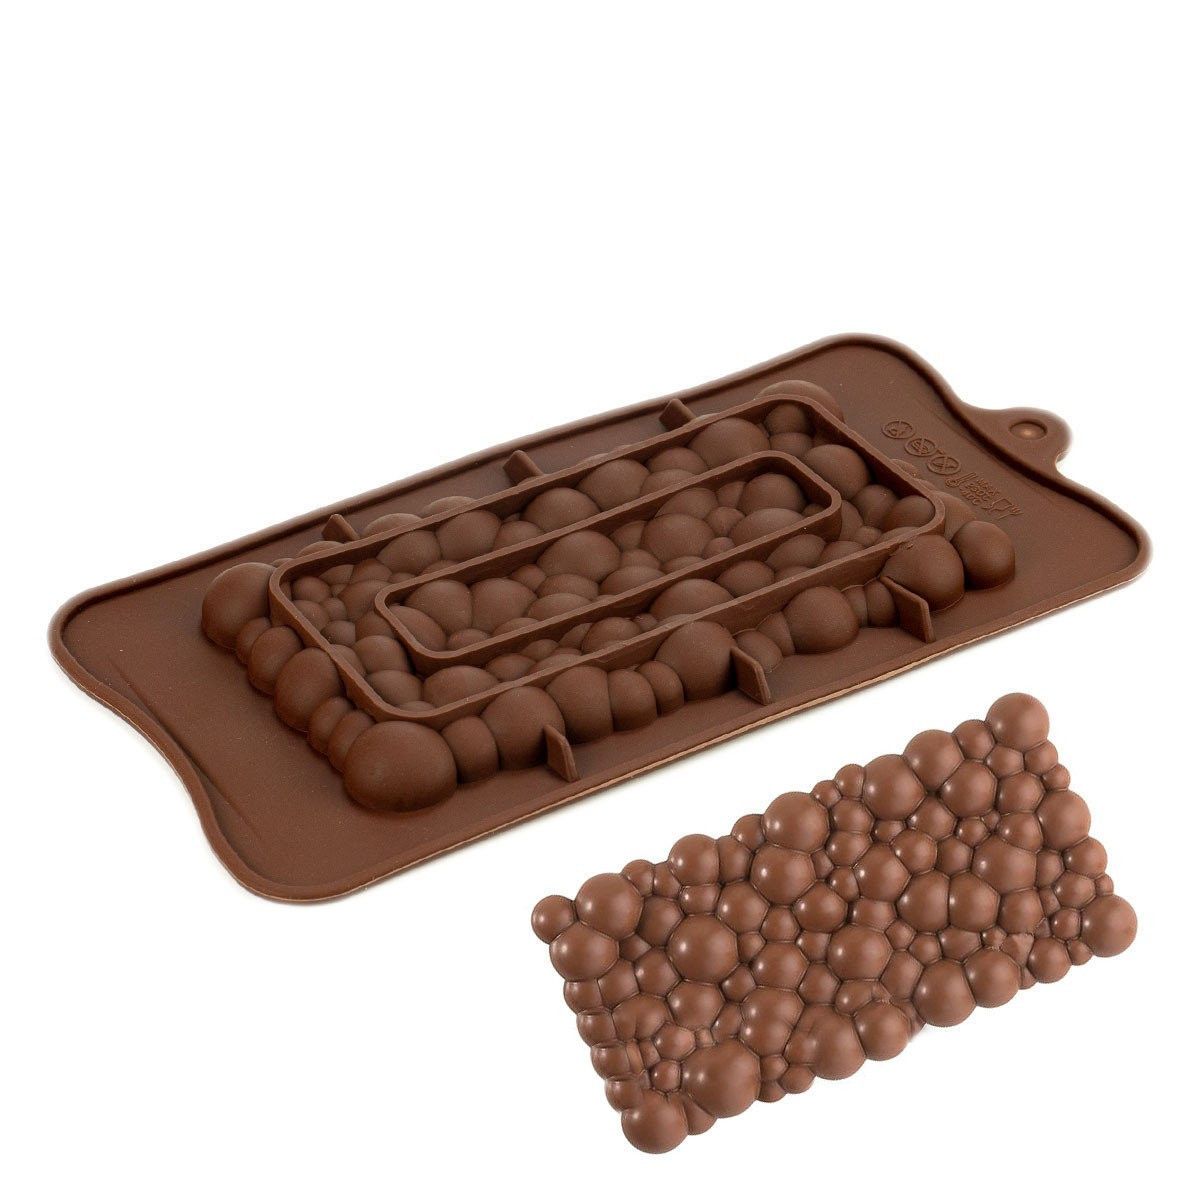 ⋗ Силиконовая форма Шоколадная плитка Милка купить в Украине ➛ CakeShop.com.ua, фото